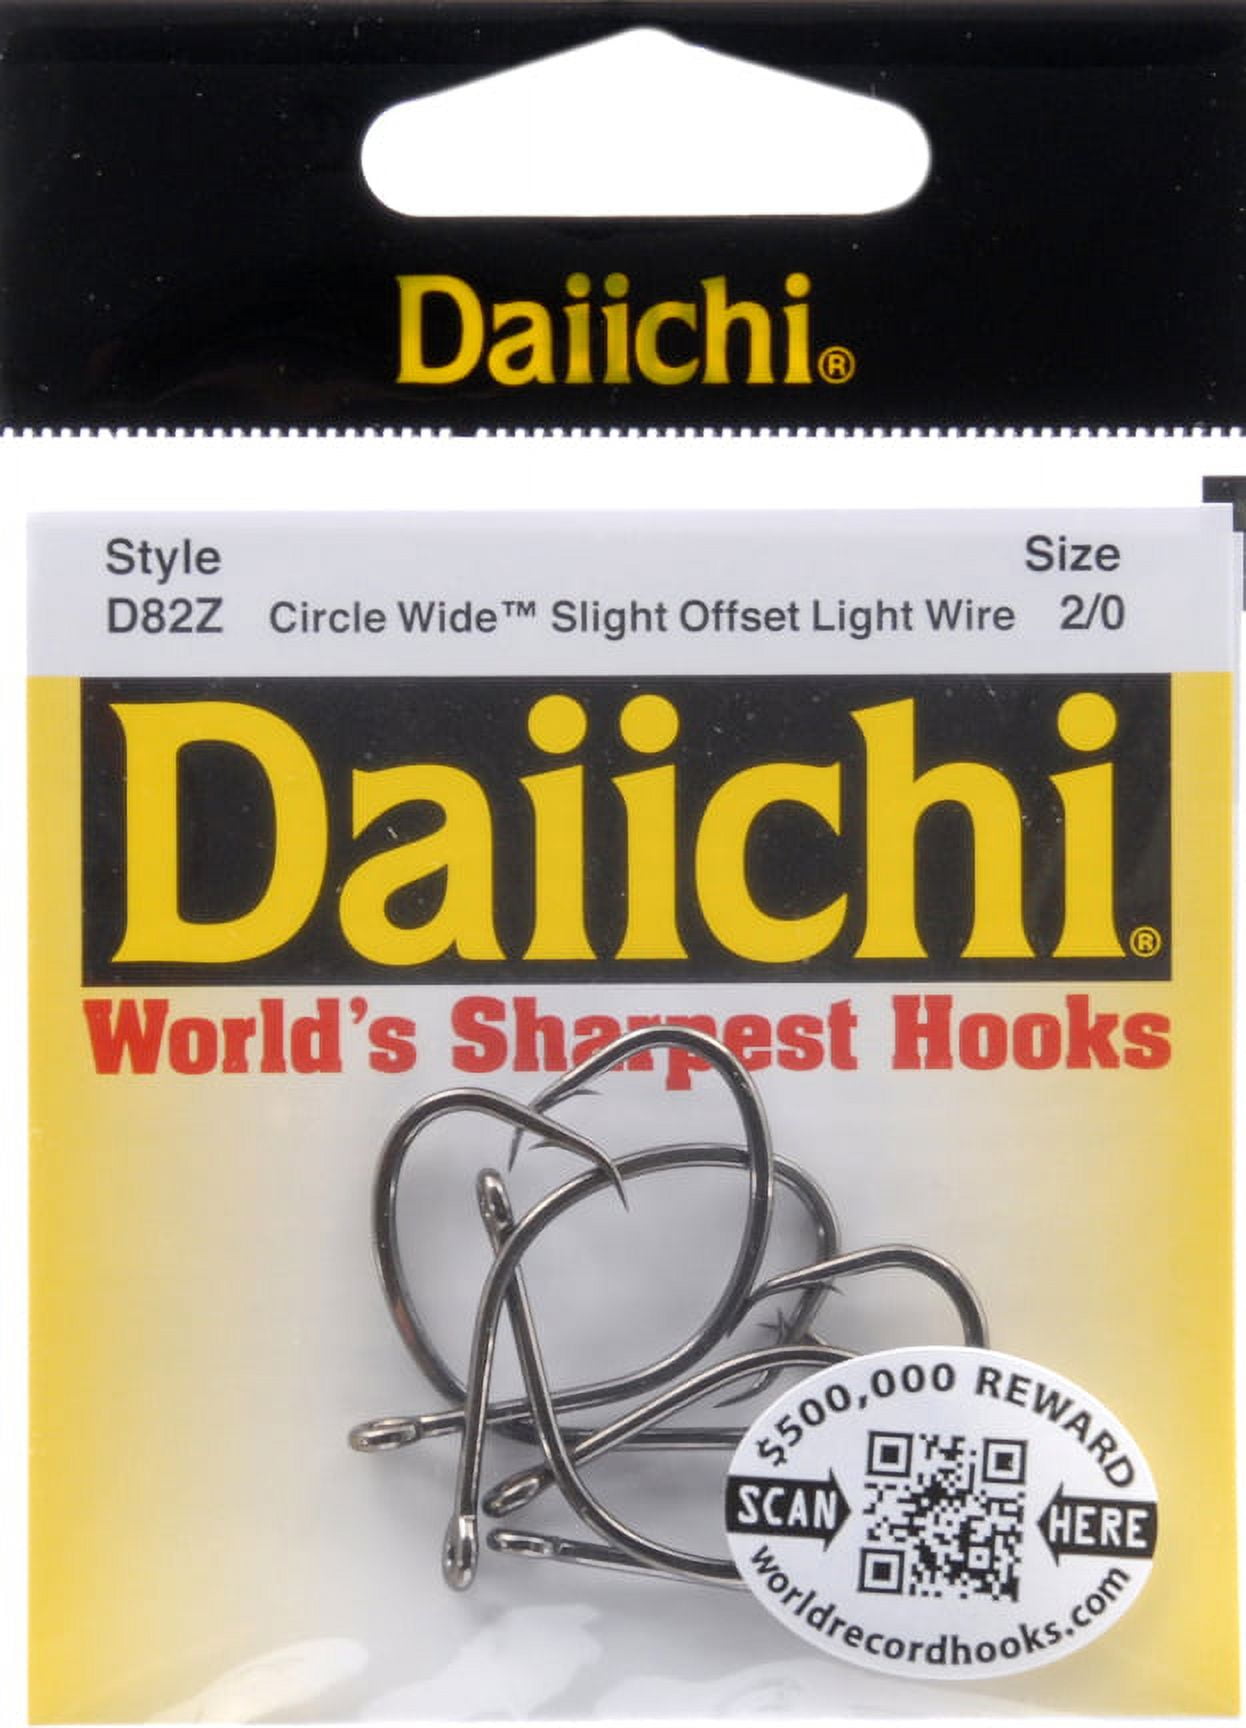 Daiichi D82Z-2/0 Circle Wide Hook Size 2/0 Forged Wide Gap Light